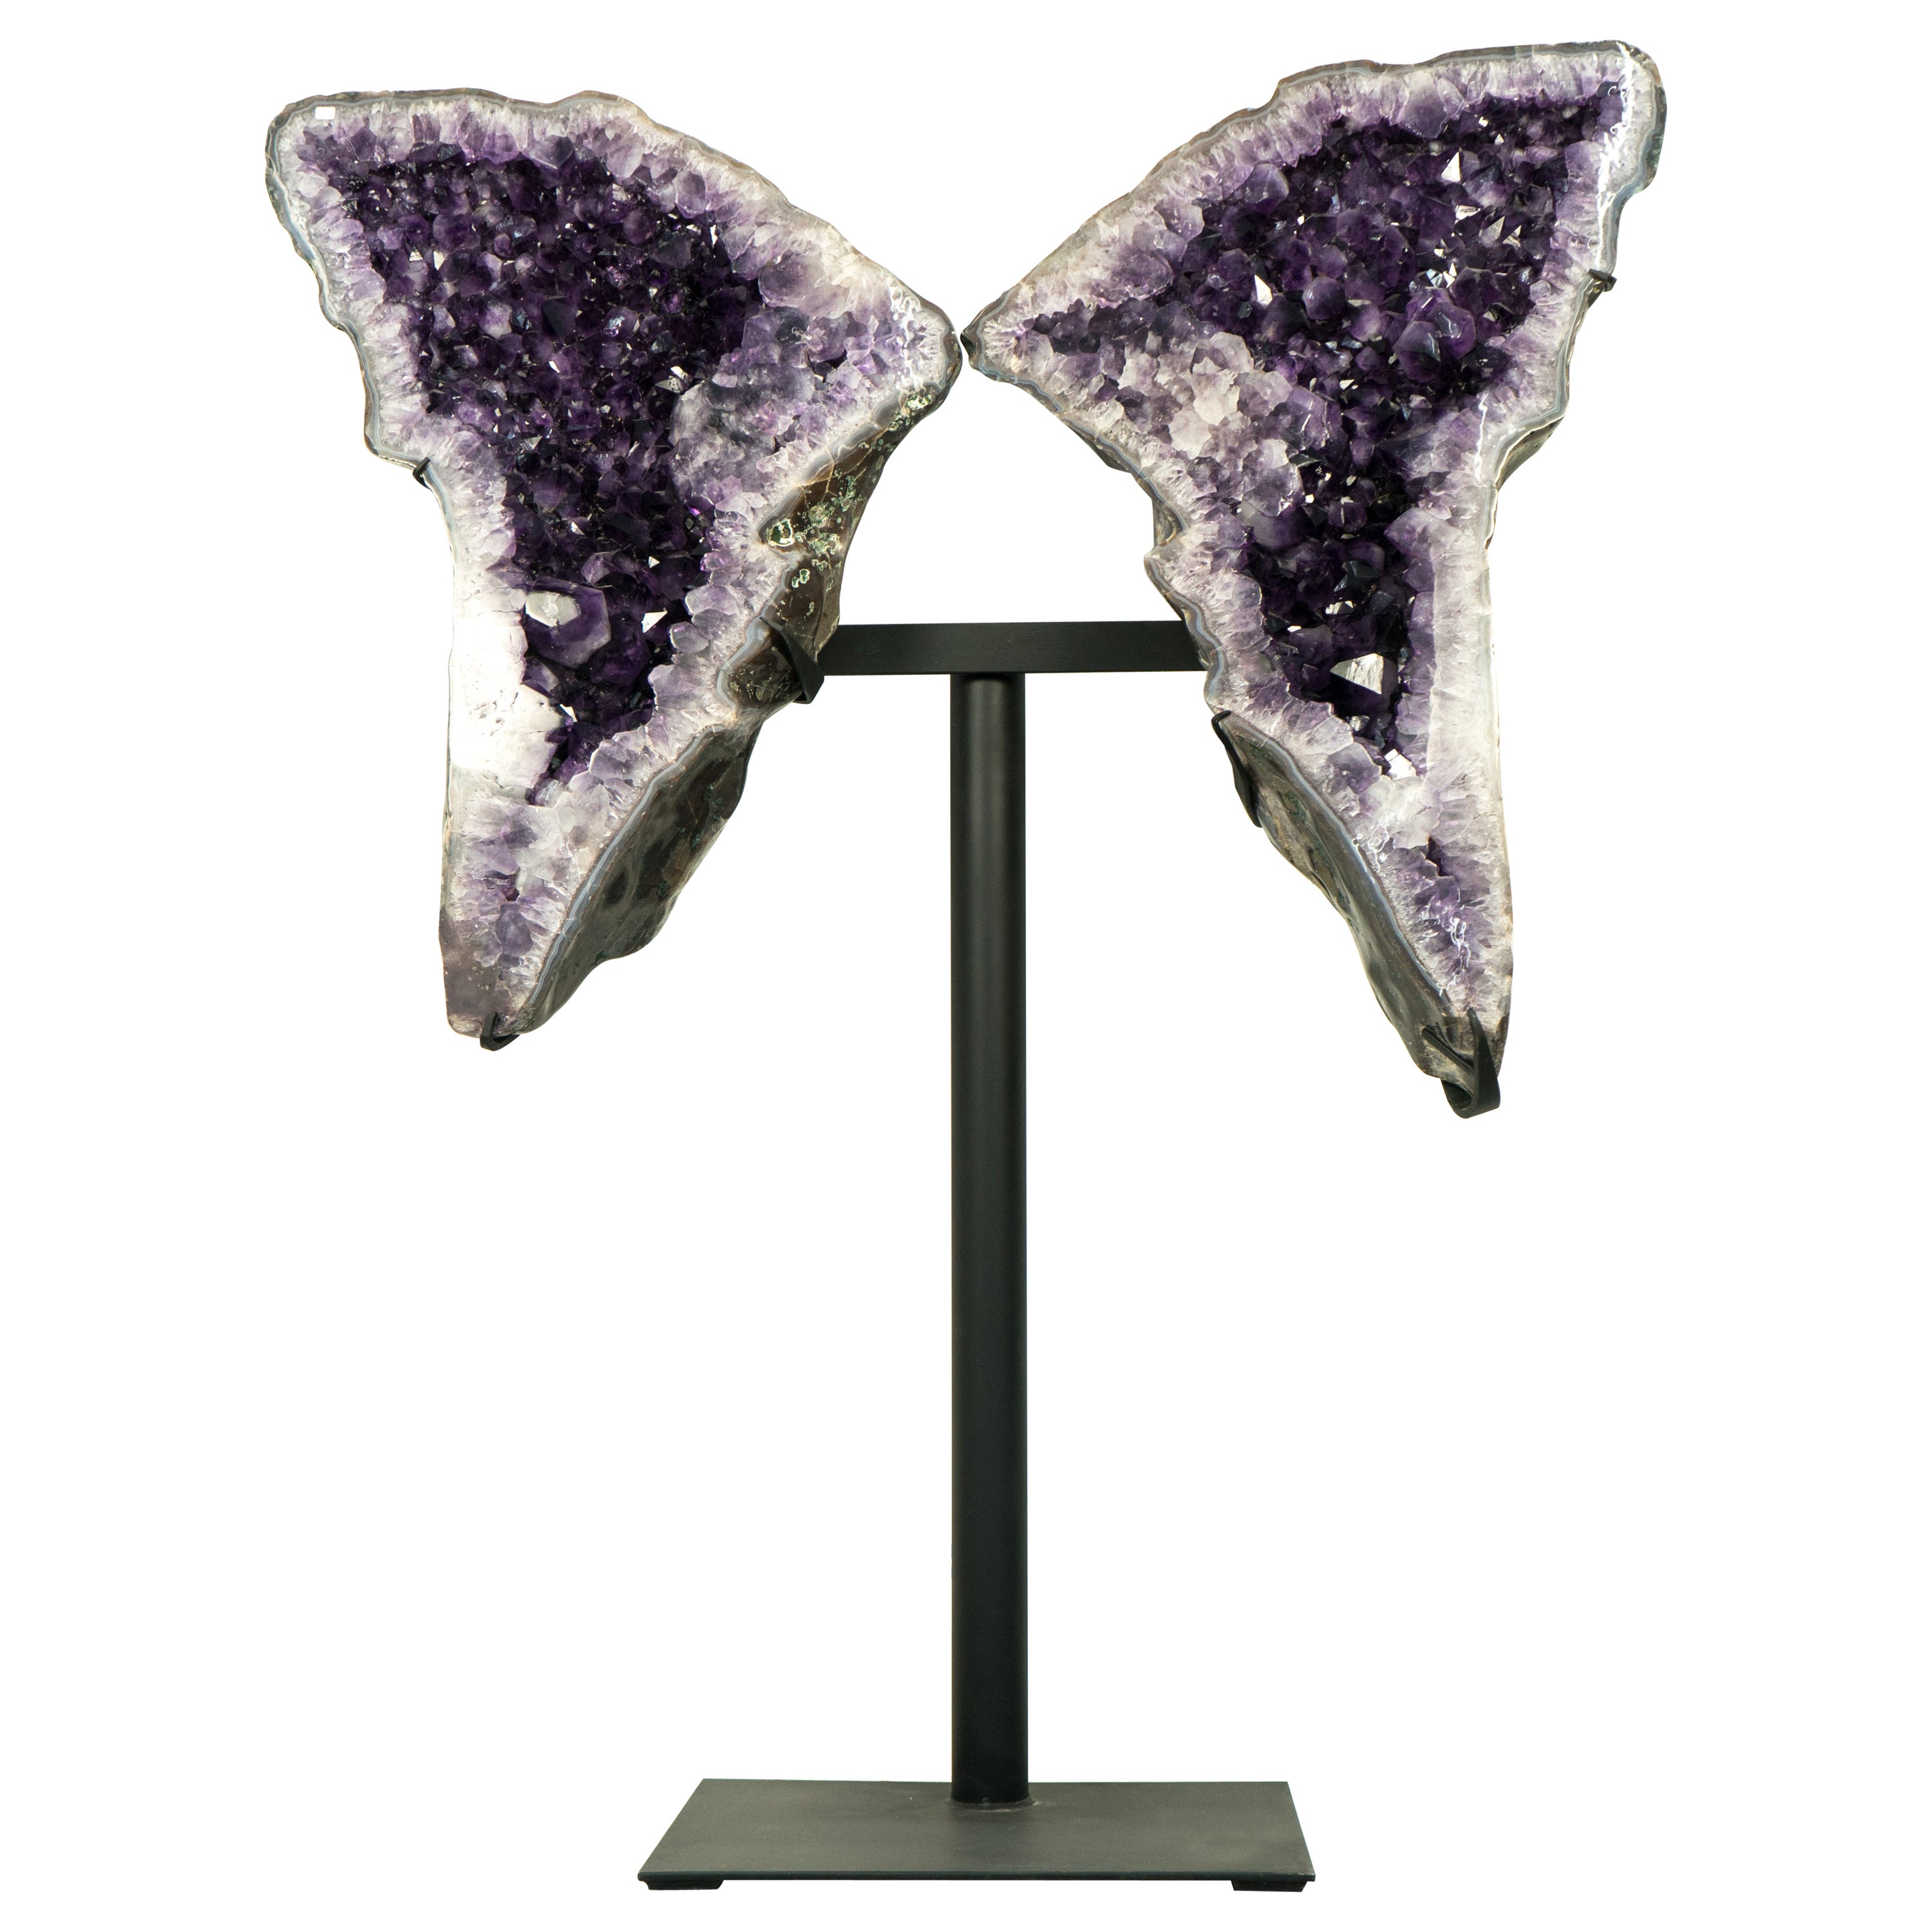 Grande améthyste géode aux ailes papillons sculpturales, améthyste violet profond de haute qualité